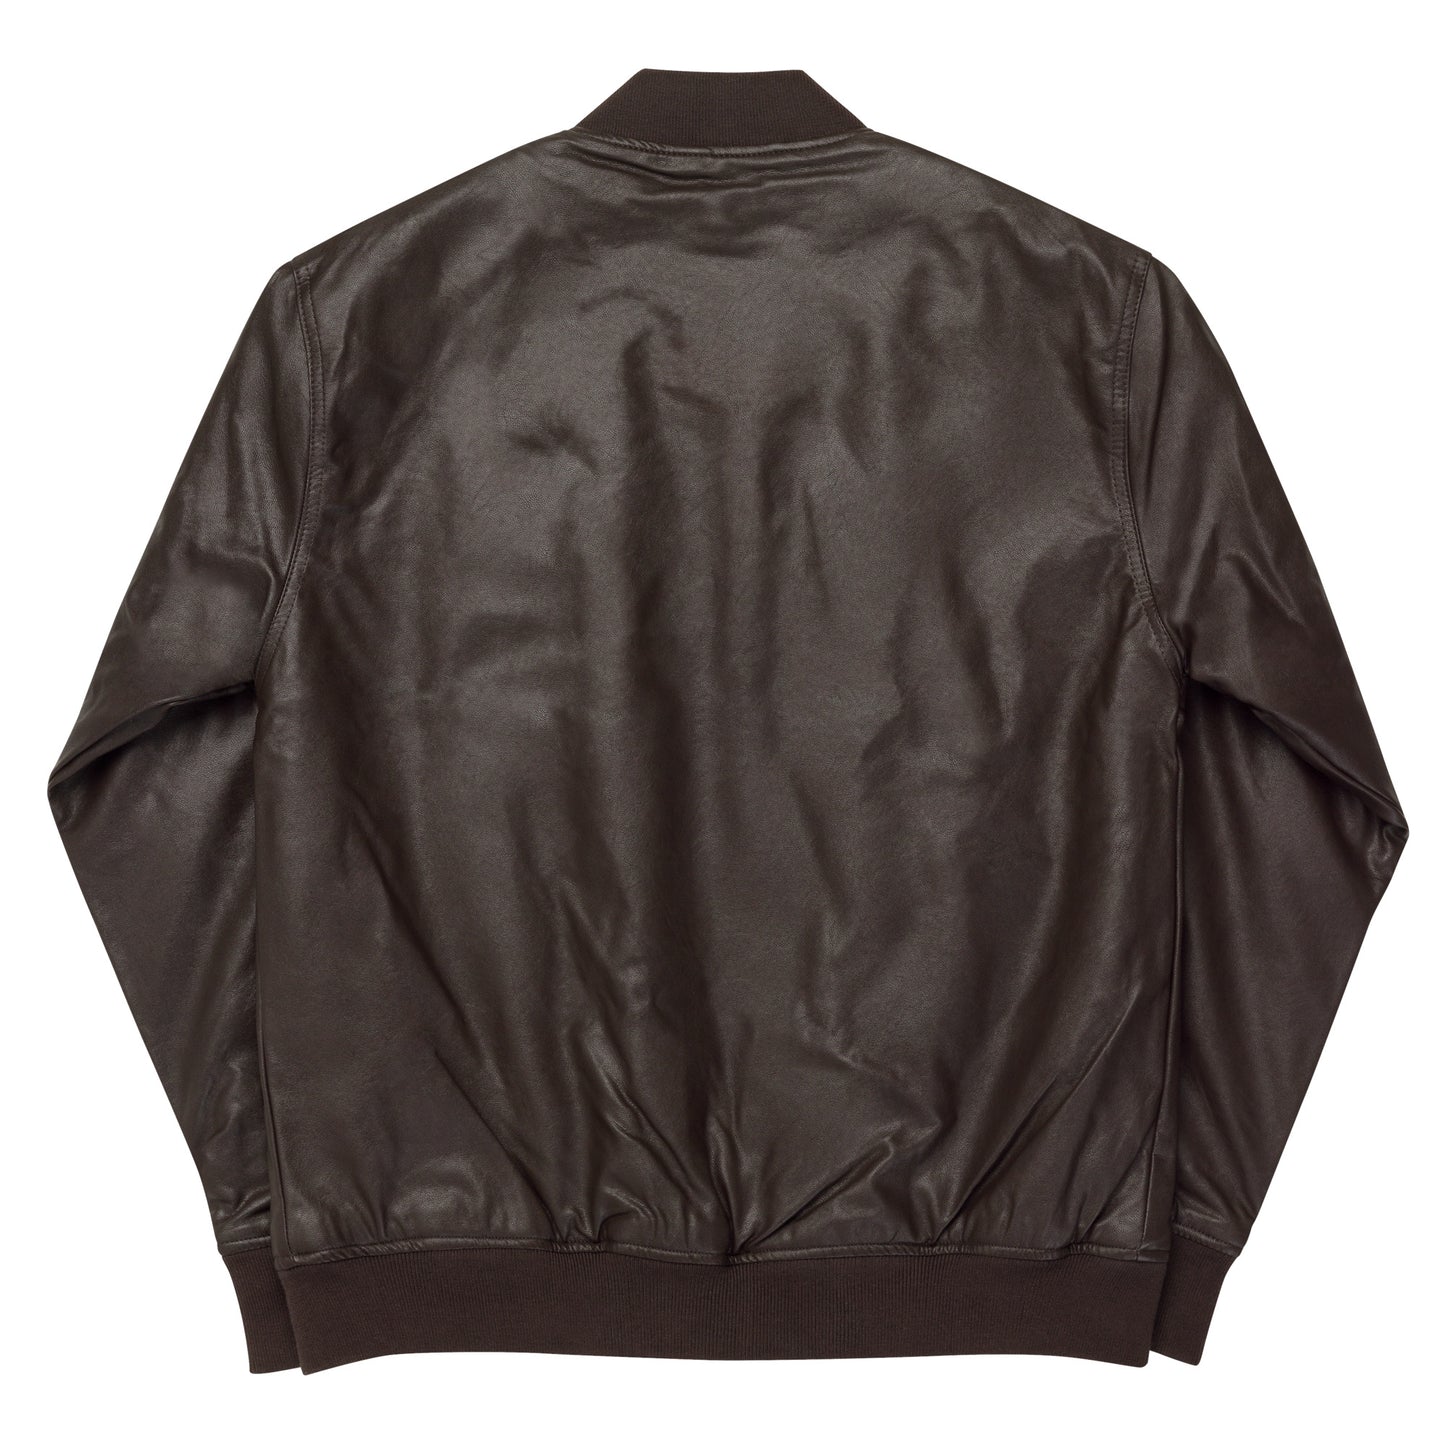 "Atomic Bomb" Leather Bomber Jacket